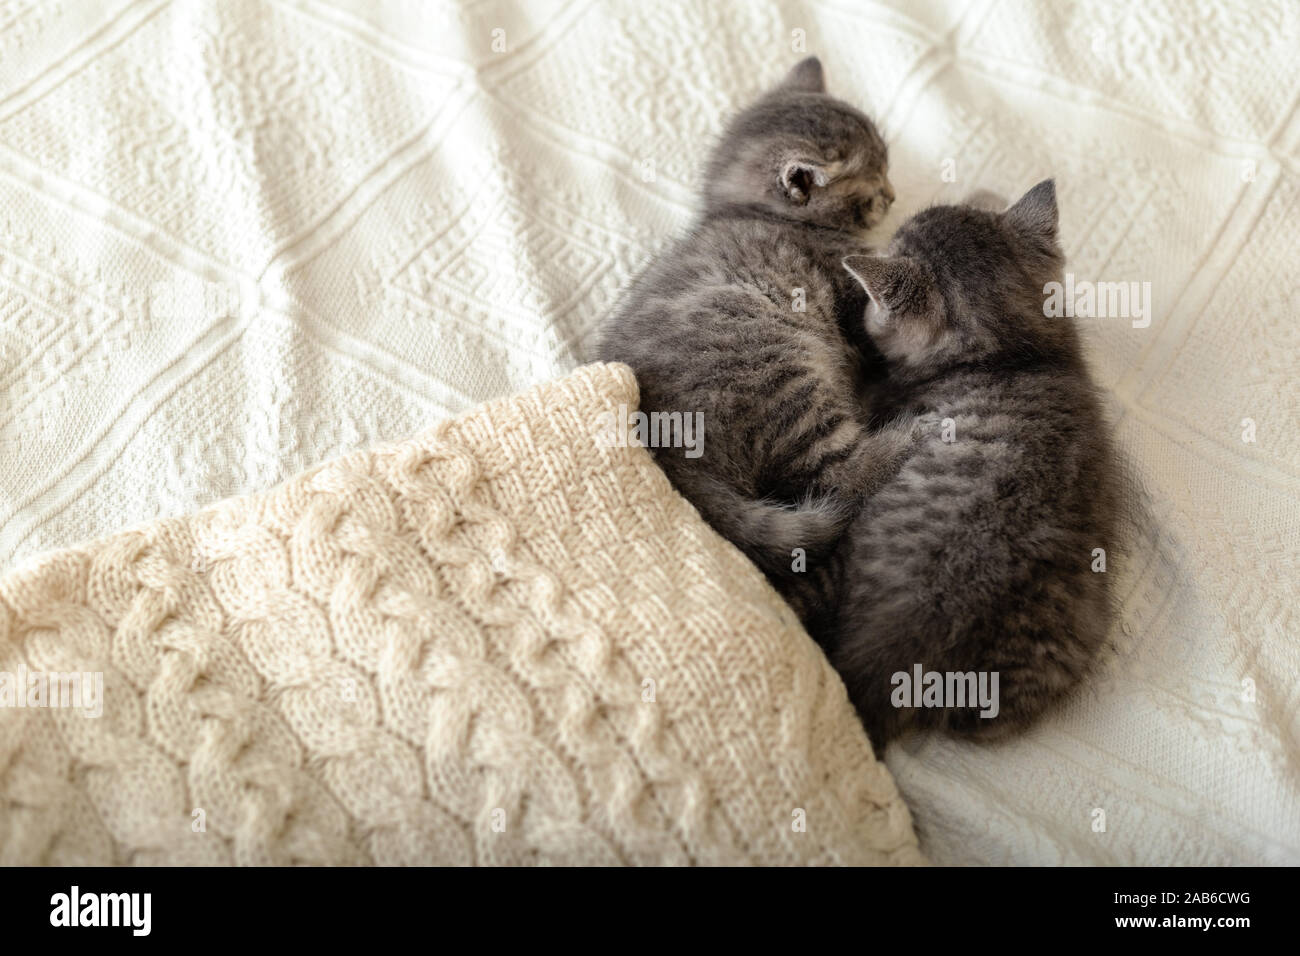 Cute chatons tabby sont couchés sur un plaid blanc près de tas de pulls chauds tricotés pliée en pile. Chaton nouveau-né, bébé chat, animal domestique, animaux Accueil Banque D'Images